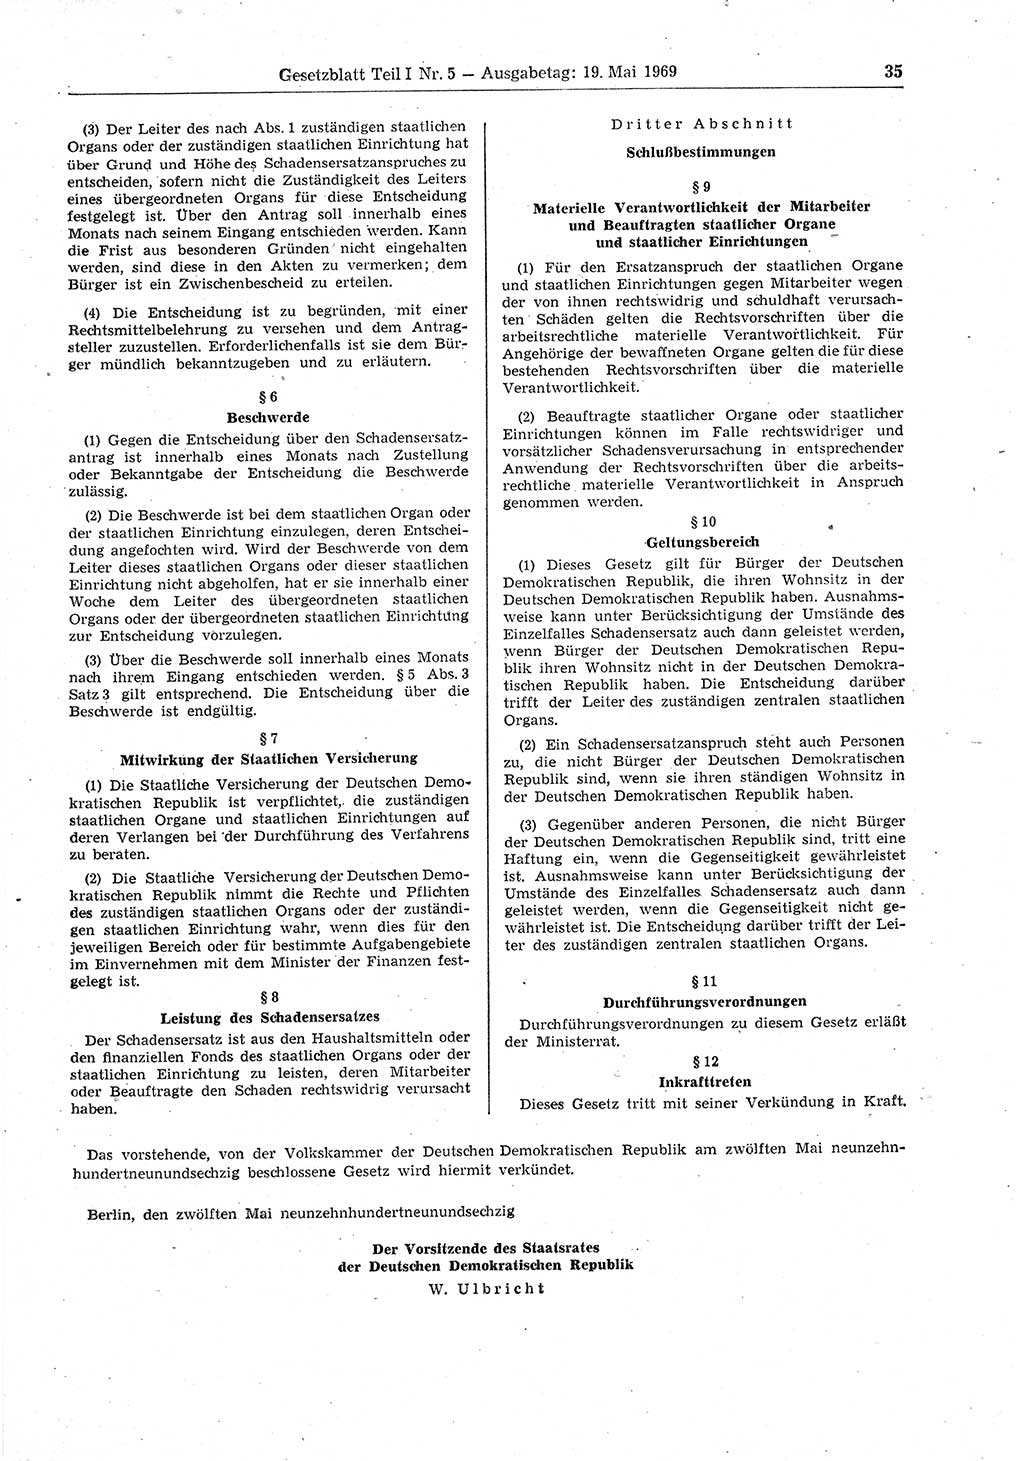 Gesetzblatt (GBl.) der Deutschen Demokratischen Republik (DDR) Teil Ⅰ 1969, Seite 35 (GBl. DDR Ⅰ 1969, S. 35)